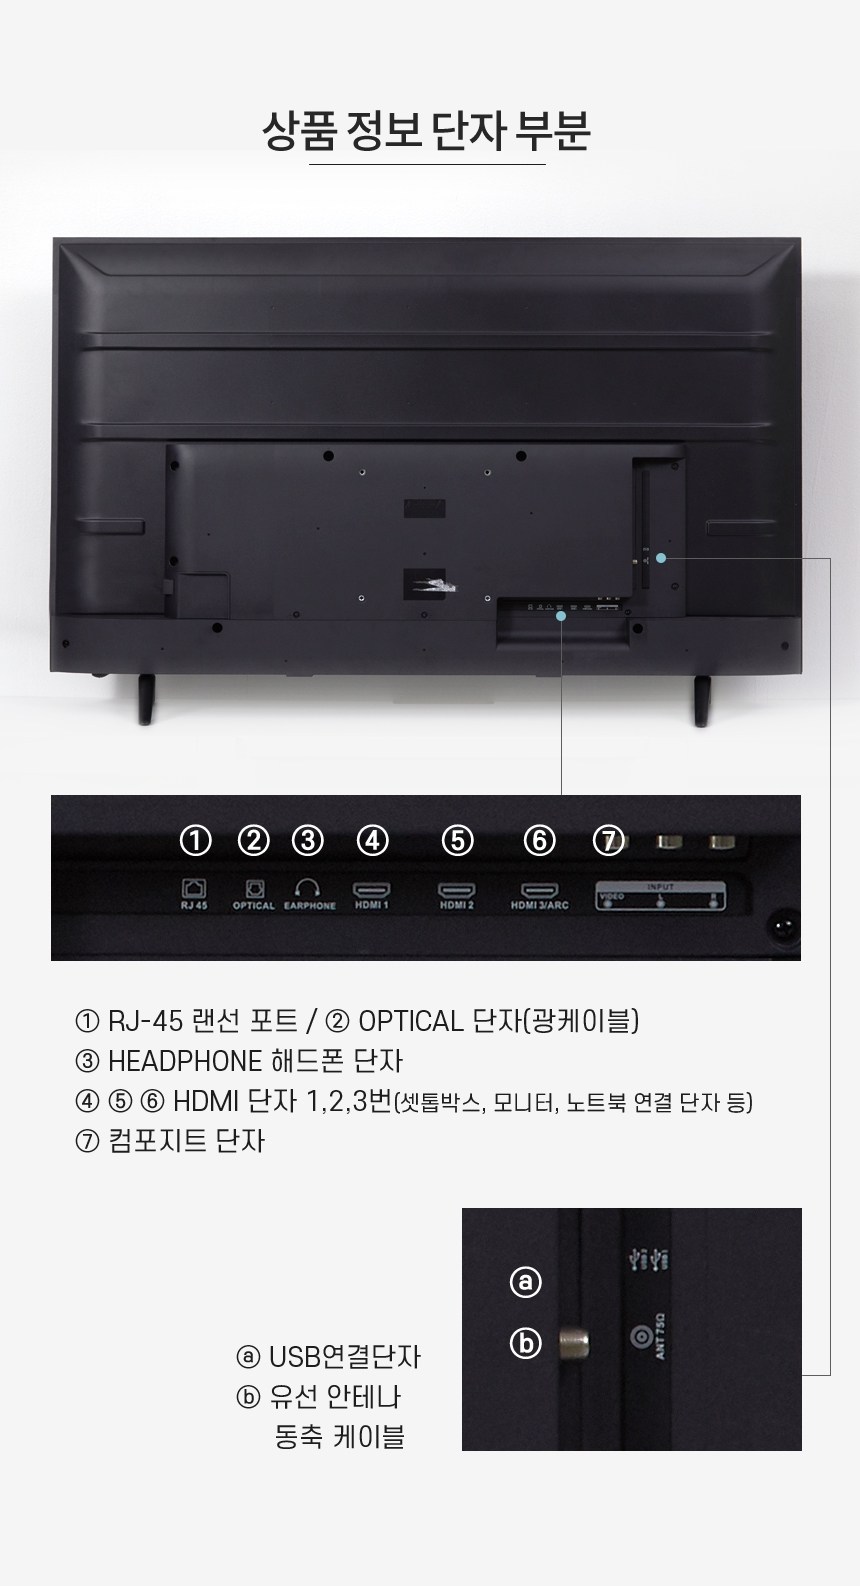 와이드뷰 구글 스마트TV 안드로이드 4K UHD139.7cm(55인치) · GTWV55UHD-E1 · 스탠드형 · 방문설치